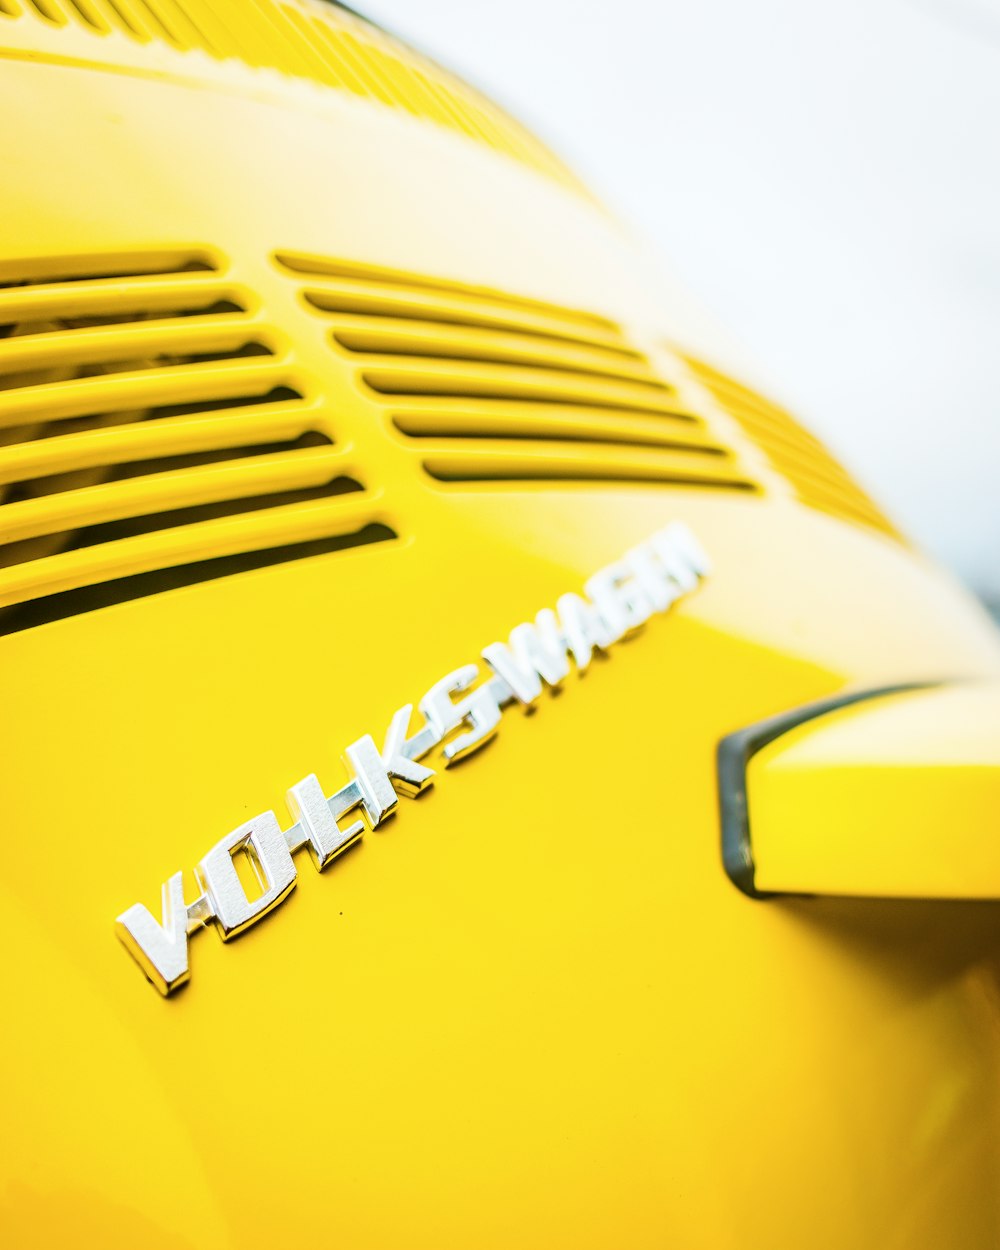 yellow Volkswagen vehicle